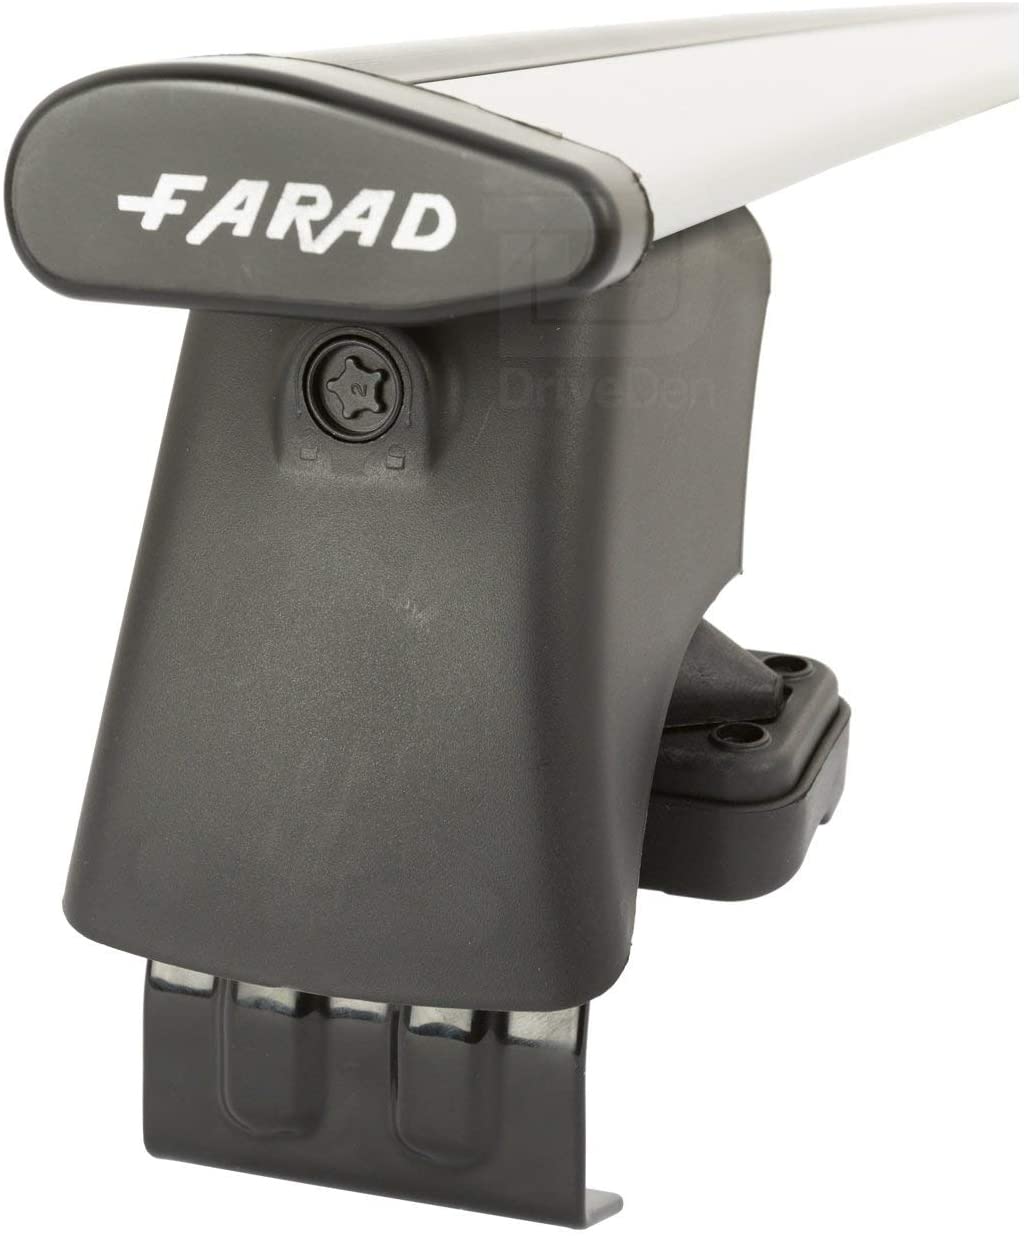 FARAD-Kit H2 per barre portatutto - Toyota Yaris (Xp90) 2006-2011 (senza corrimano)